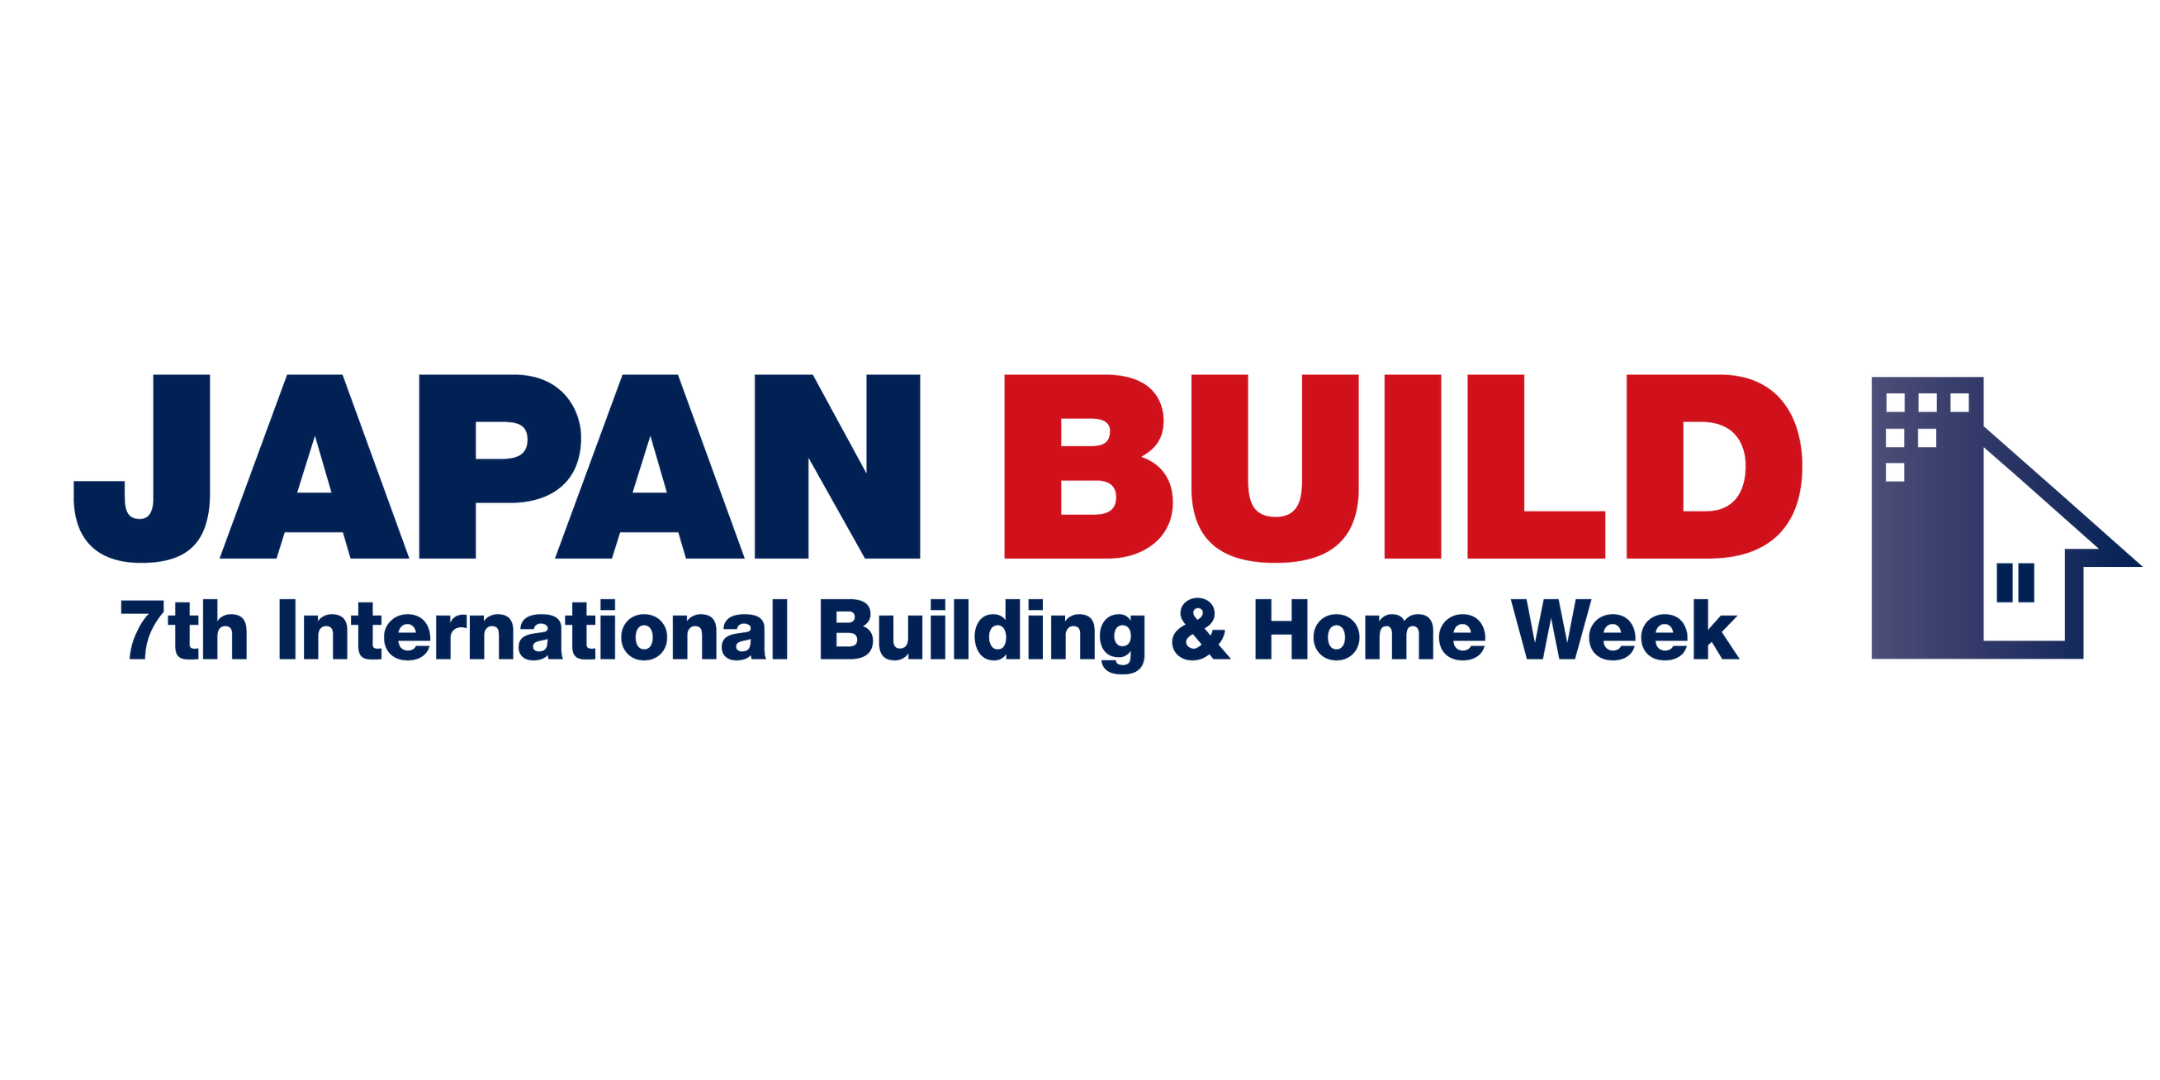 Japan Build, Tokyo, Japan